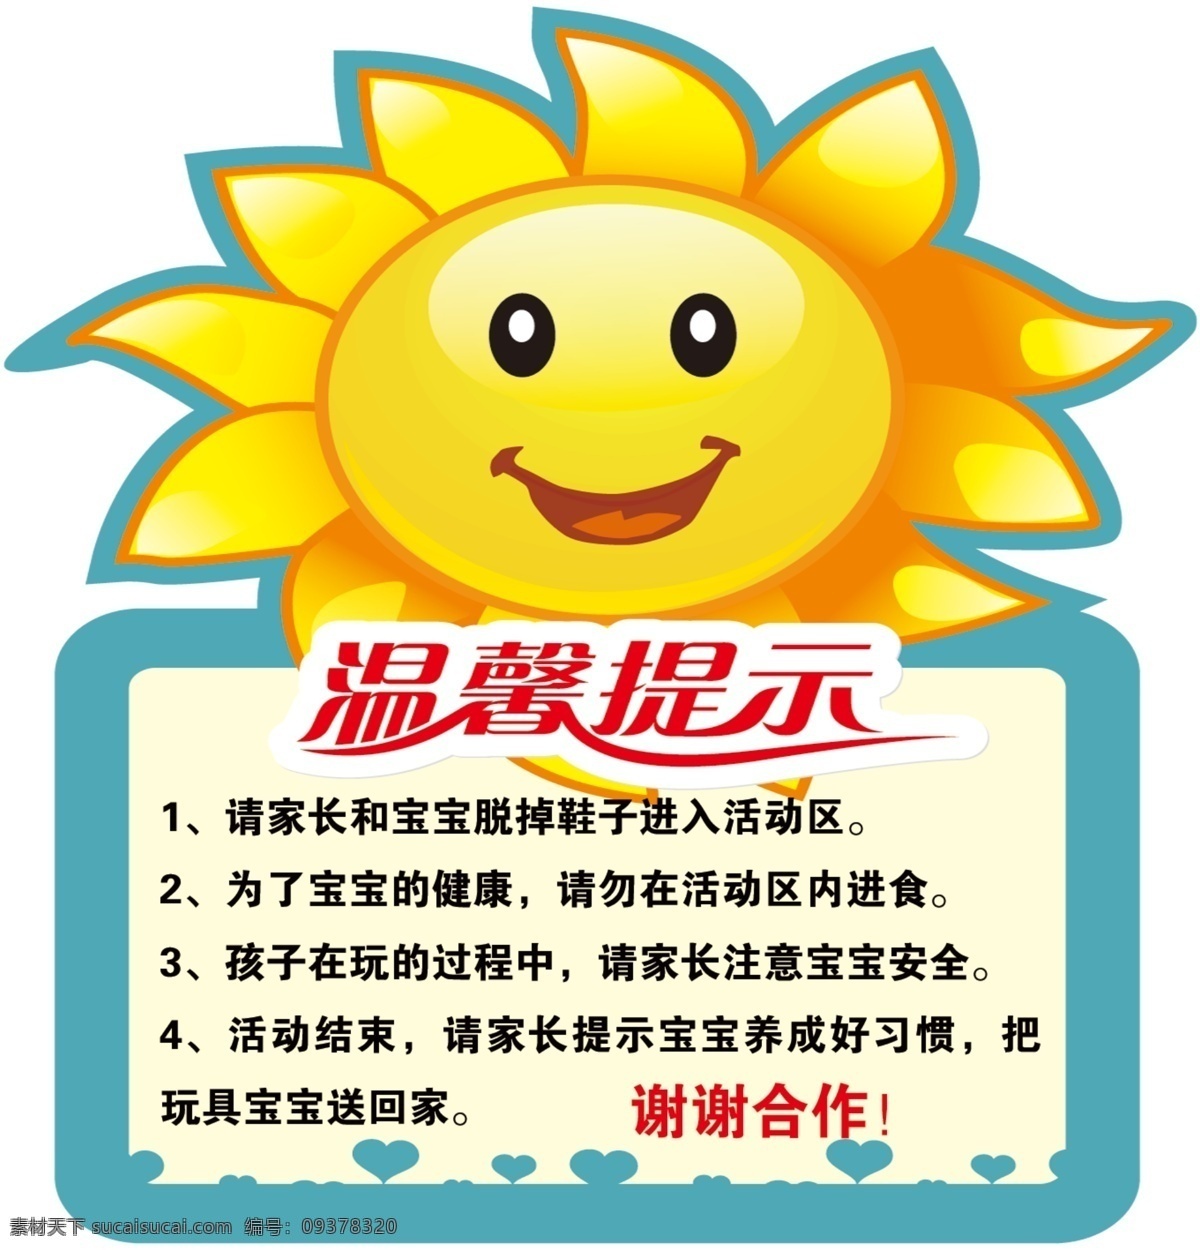 幼儿园 温馨 提示 太阳 温馨提示 谢谢合作 卡通 笑脸 展板模板 广告设计模板 源文件